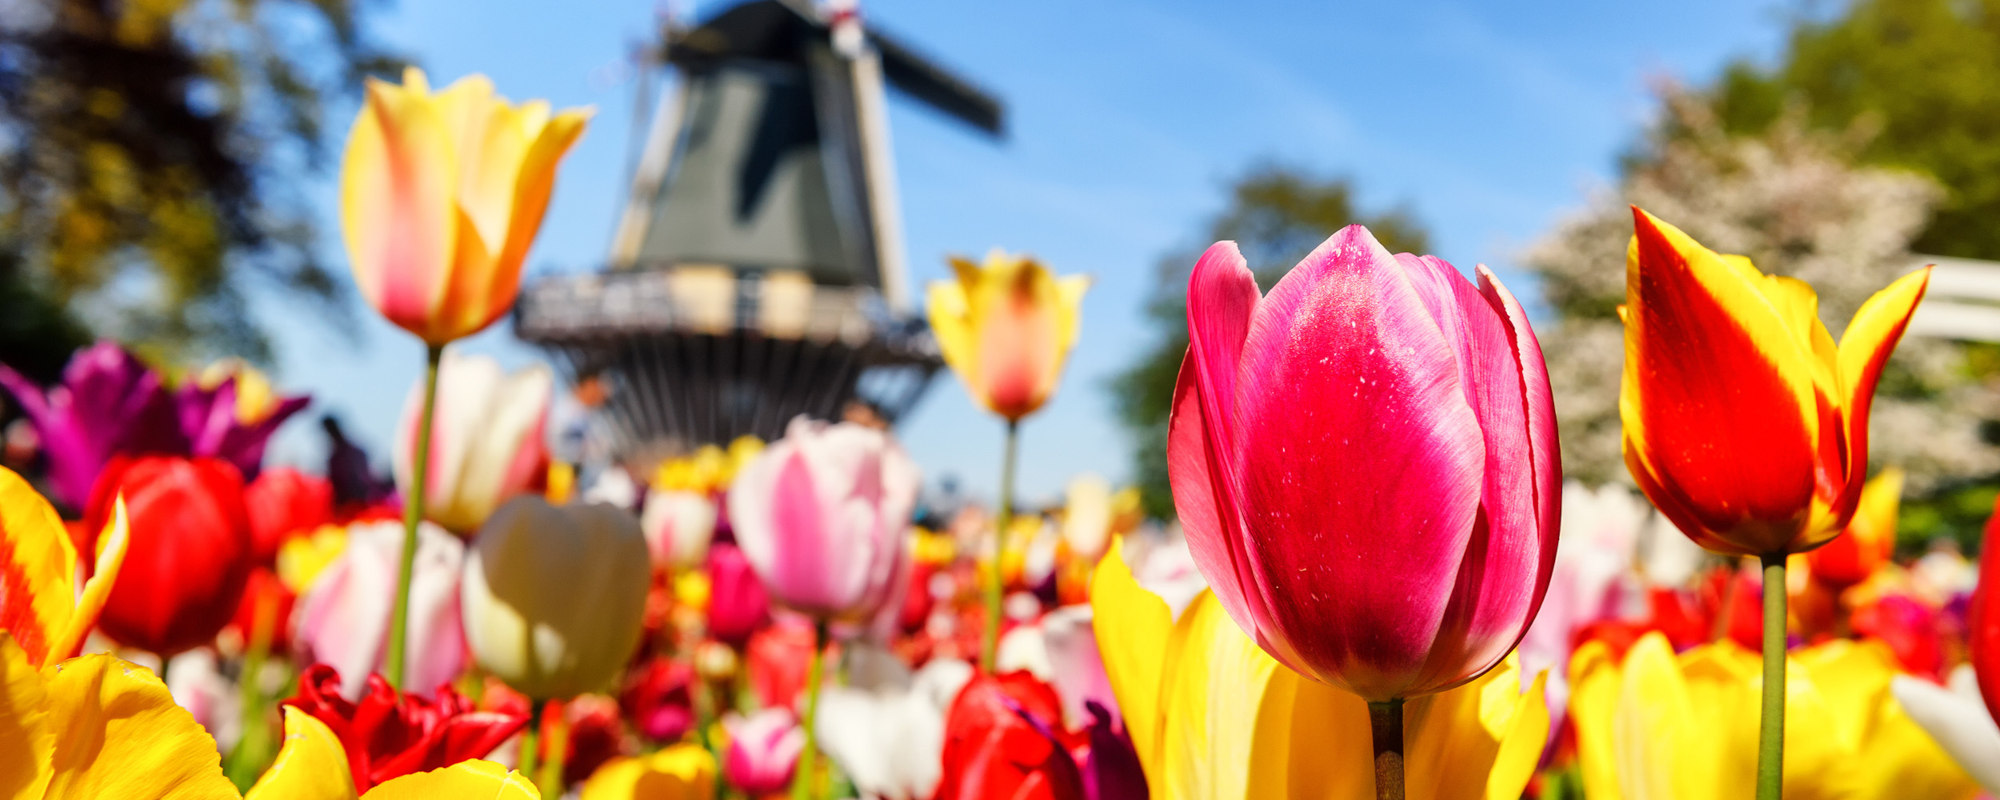 Niederlande - Windmühle im Hintergrund, bunte Tulpen im Vordergrund